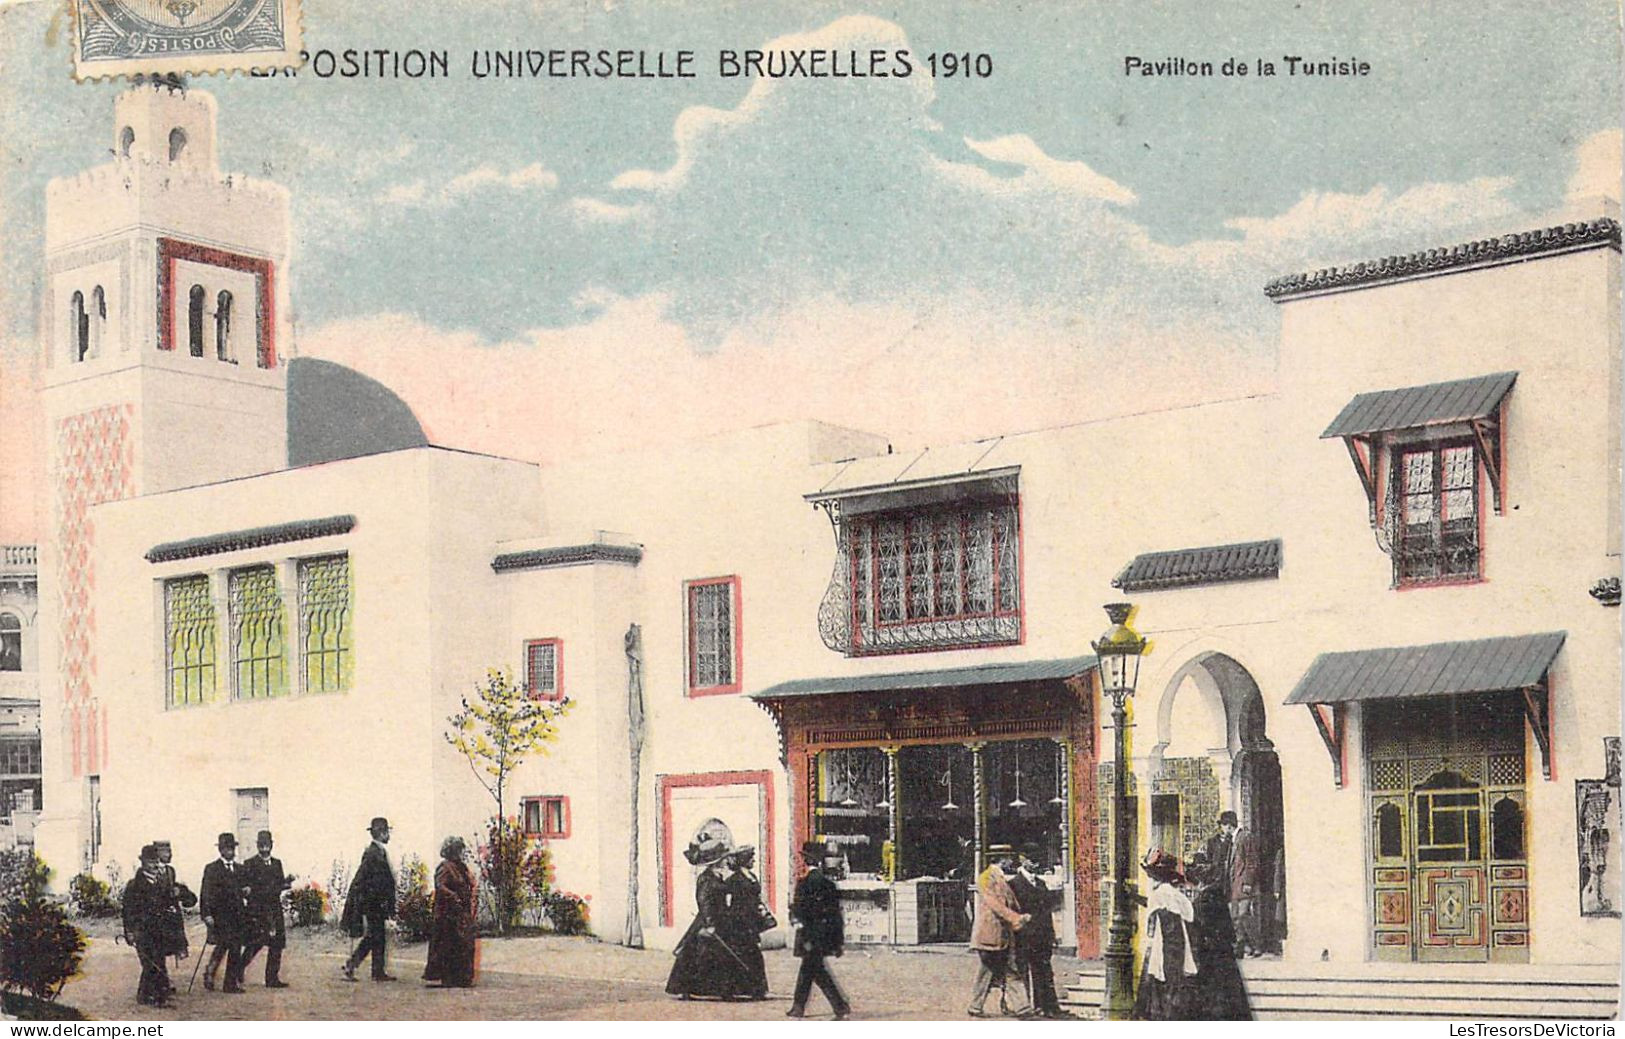 BELGIQUE - BRUXELLES Exposition Bruxelles 1910 - Pavillon De La Tunisie - Carte Postale Ancienne - Mostre Universali